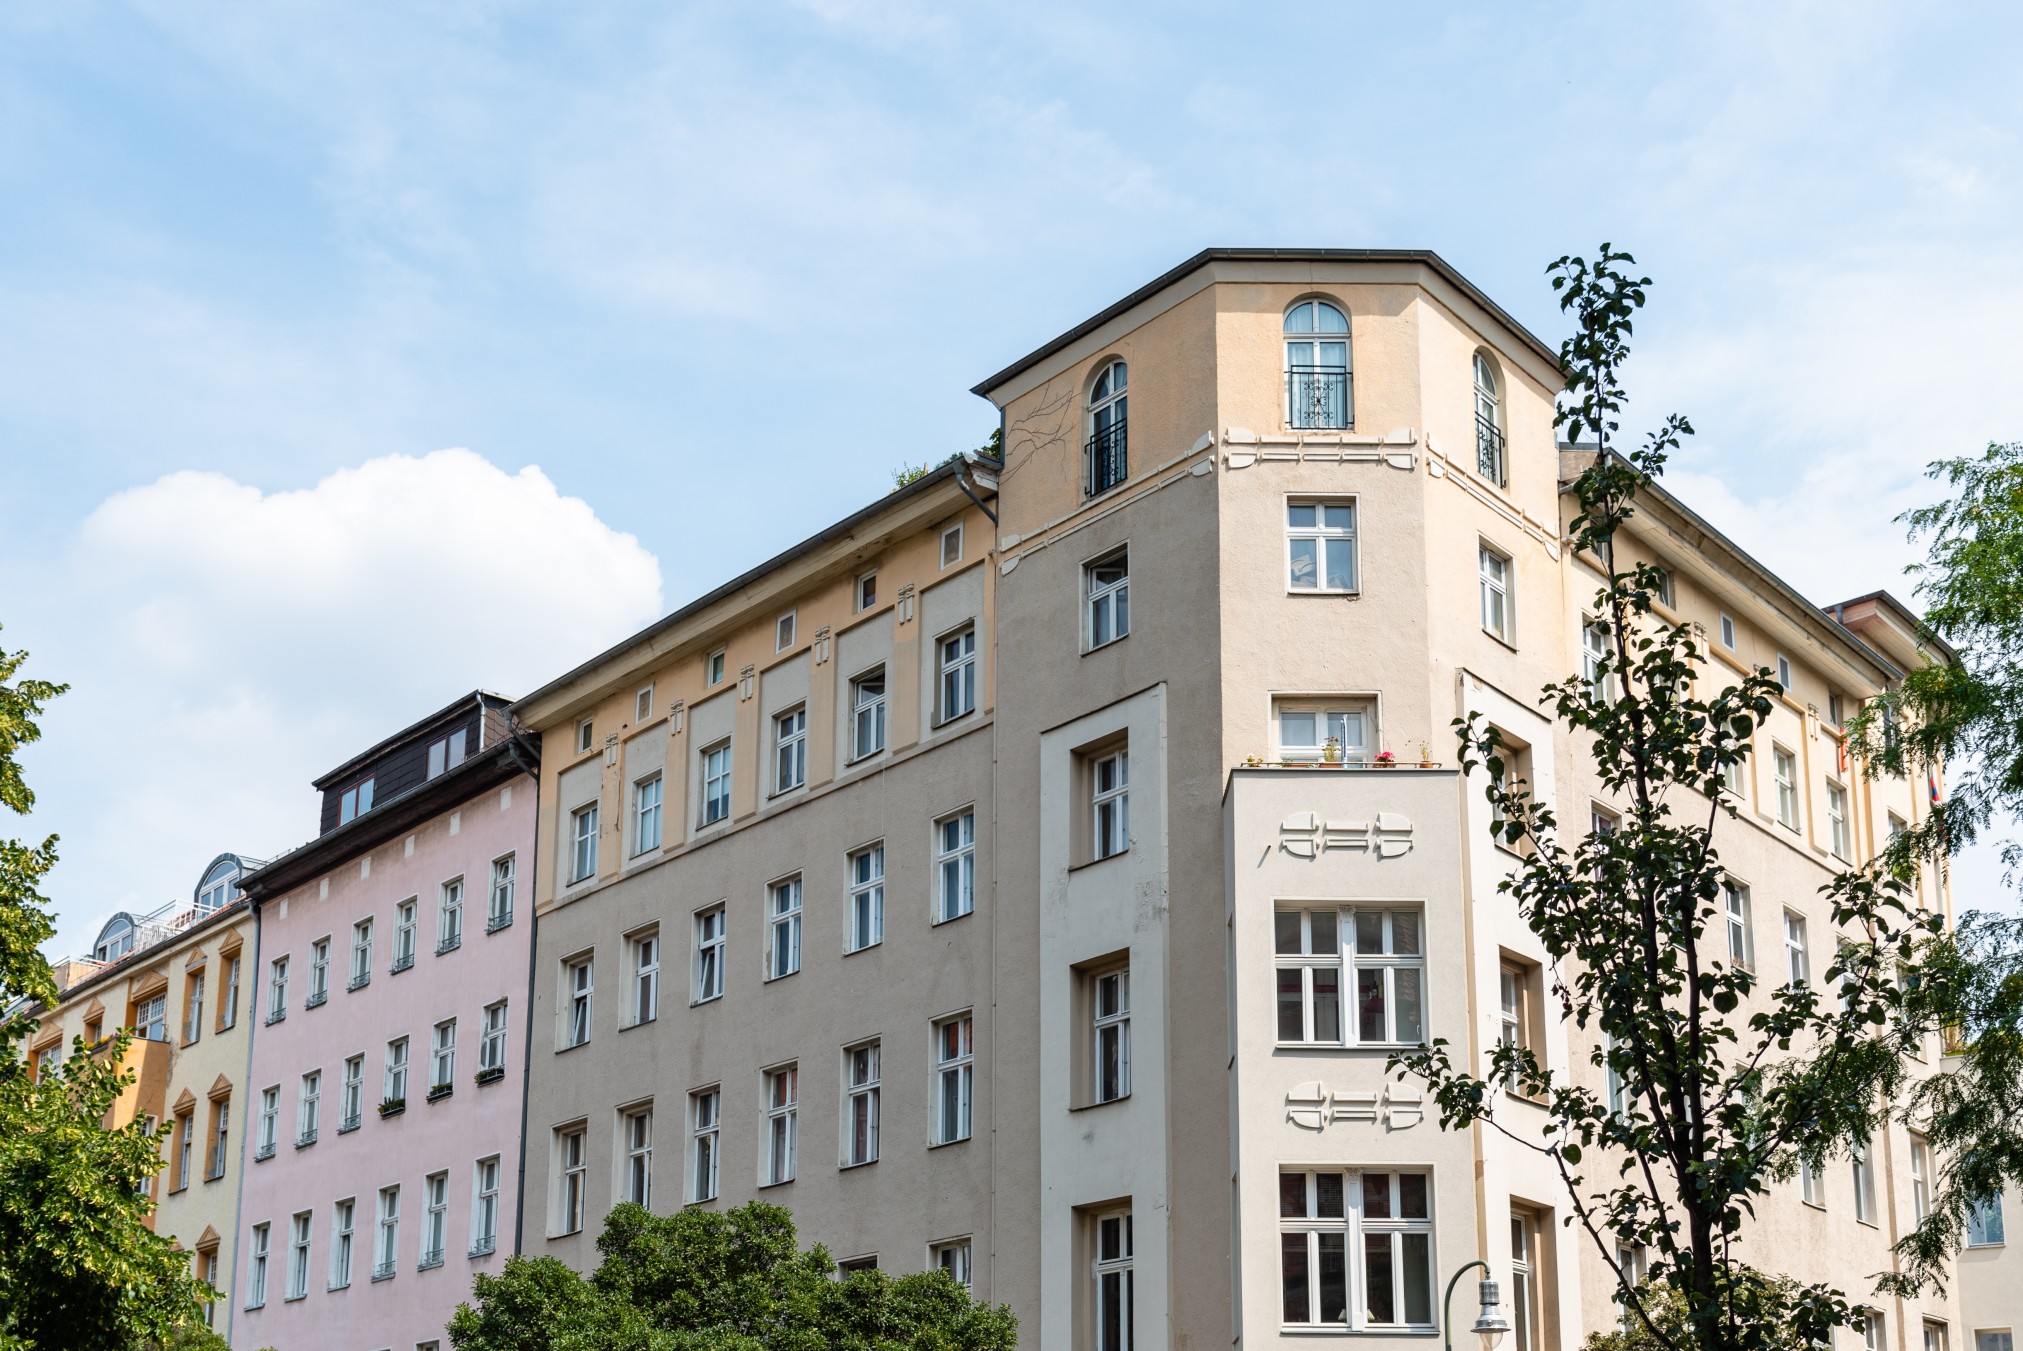 In Deutschland sind die Immobilienpreise in den vergangenen Jahren teils drastisch gestiegen. Foto JJFarquitectos via Twenty20